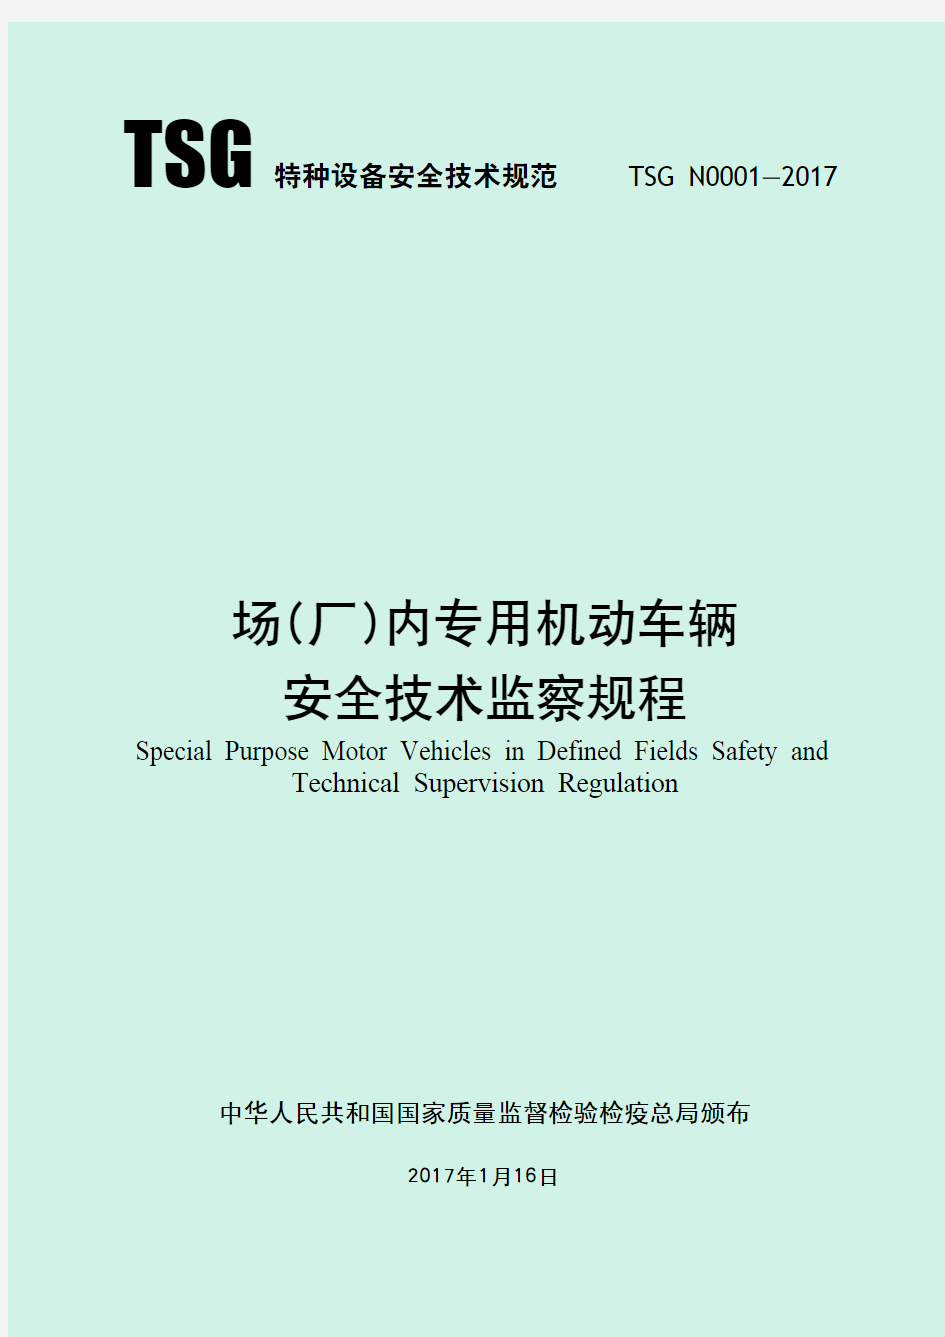 TSG N0001-2017场(厂)内专用机动车辆安全技术监察规程